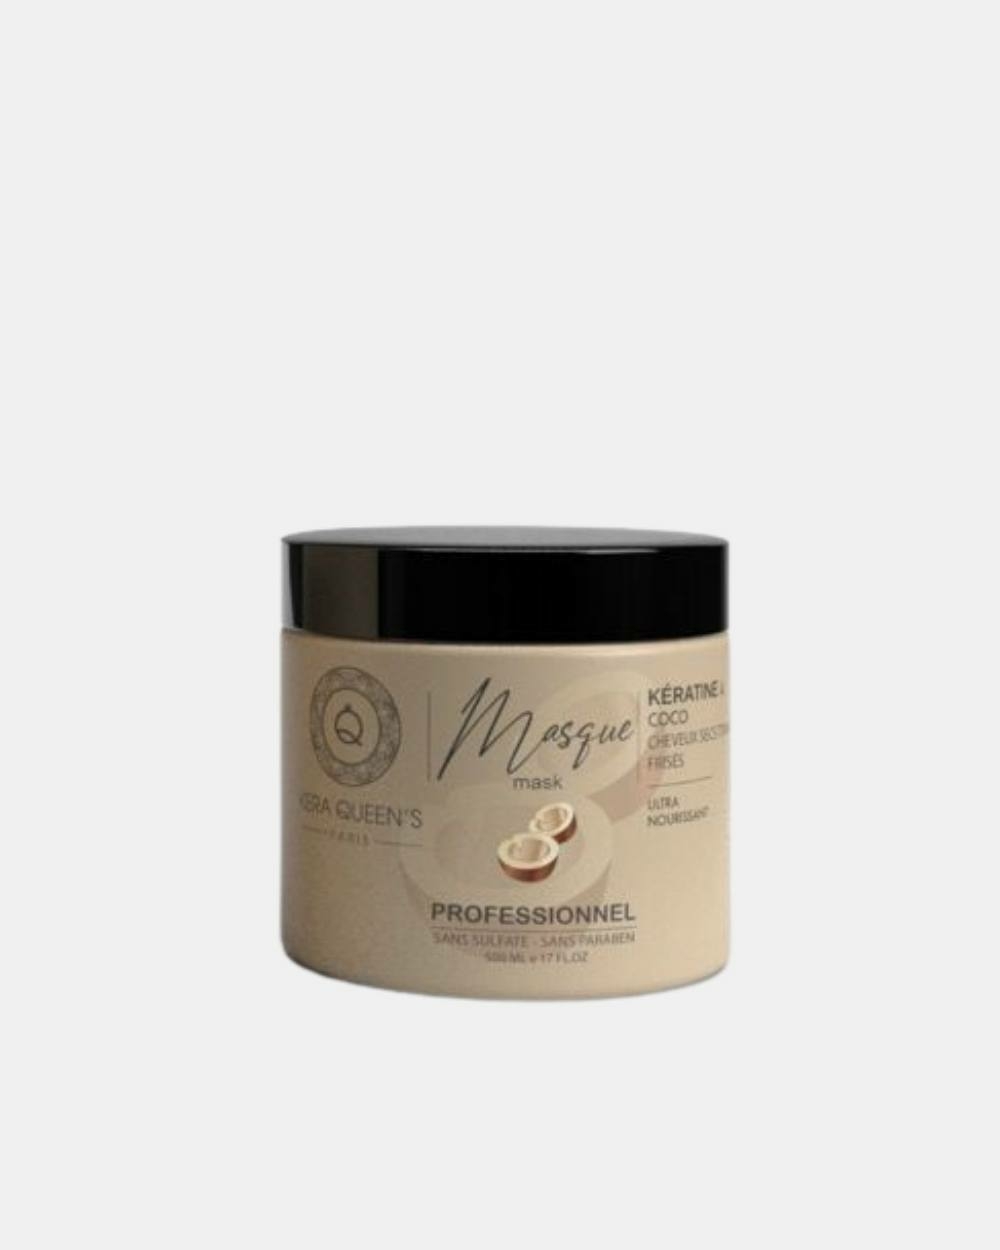 Masque Kératine et Coco 500 ml pour rendre vos cheveux plus soyeux